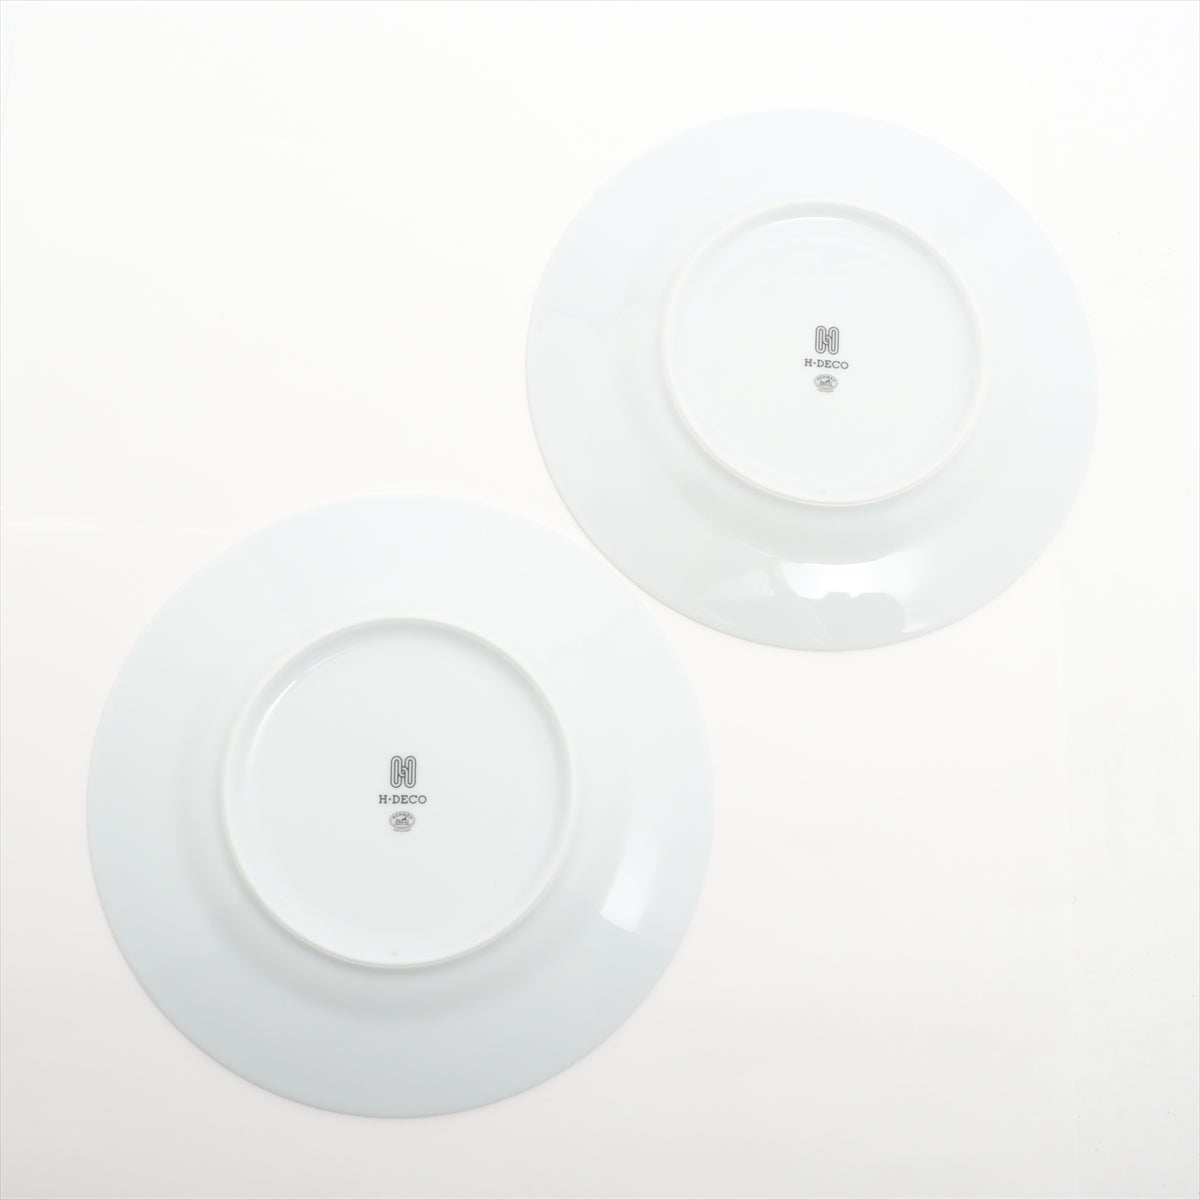 Hermès H deco Pair plates 23cm Ceramic Black × White